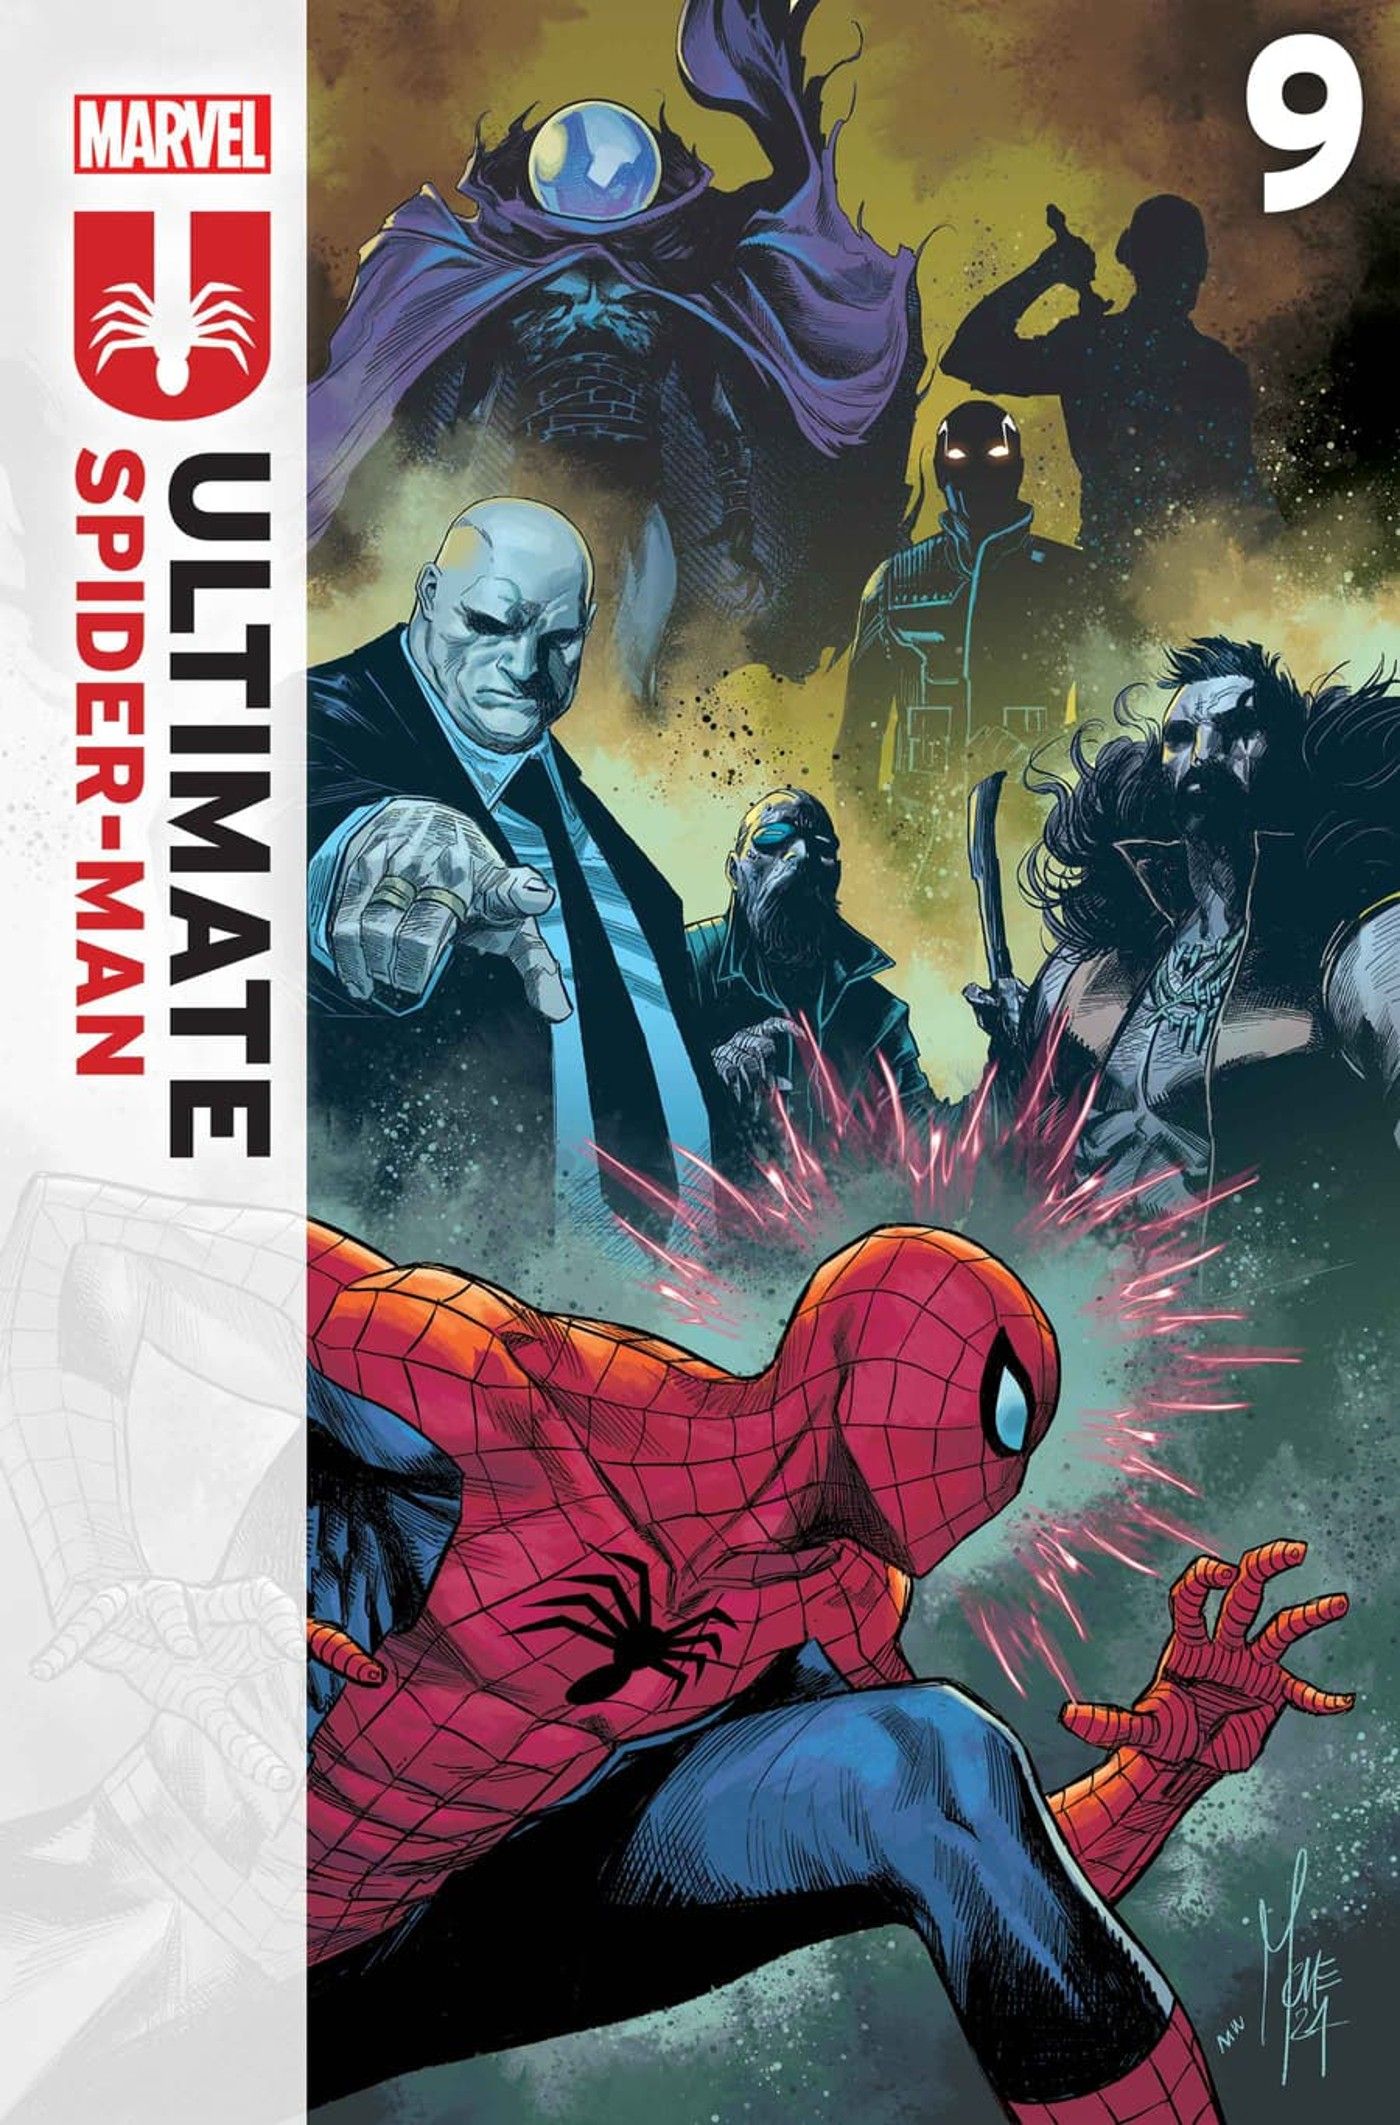 Capa definitiva do Homem-Aranha 9 com os novos Seis Sinistros